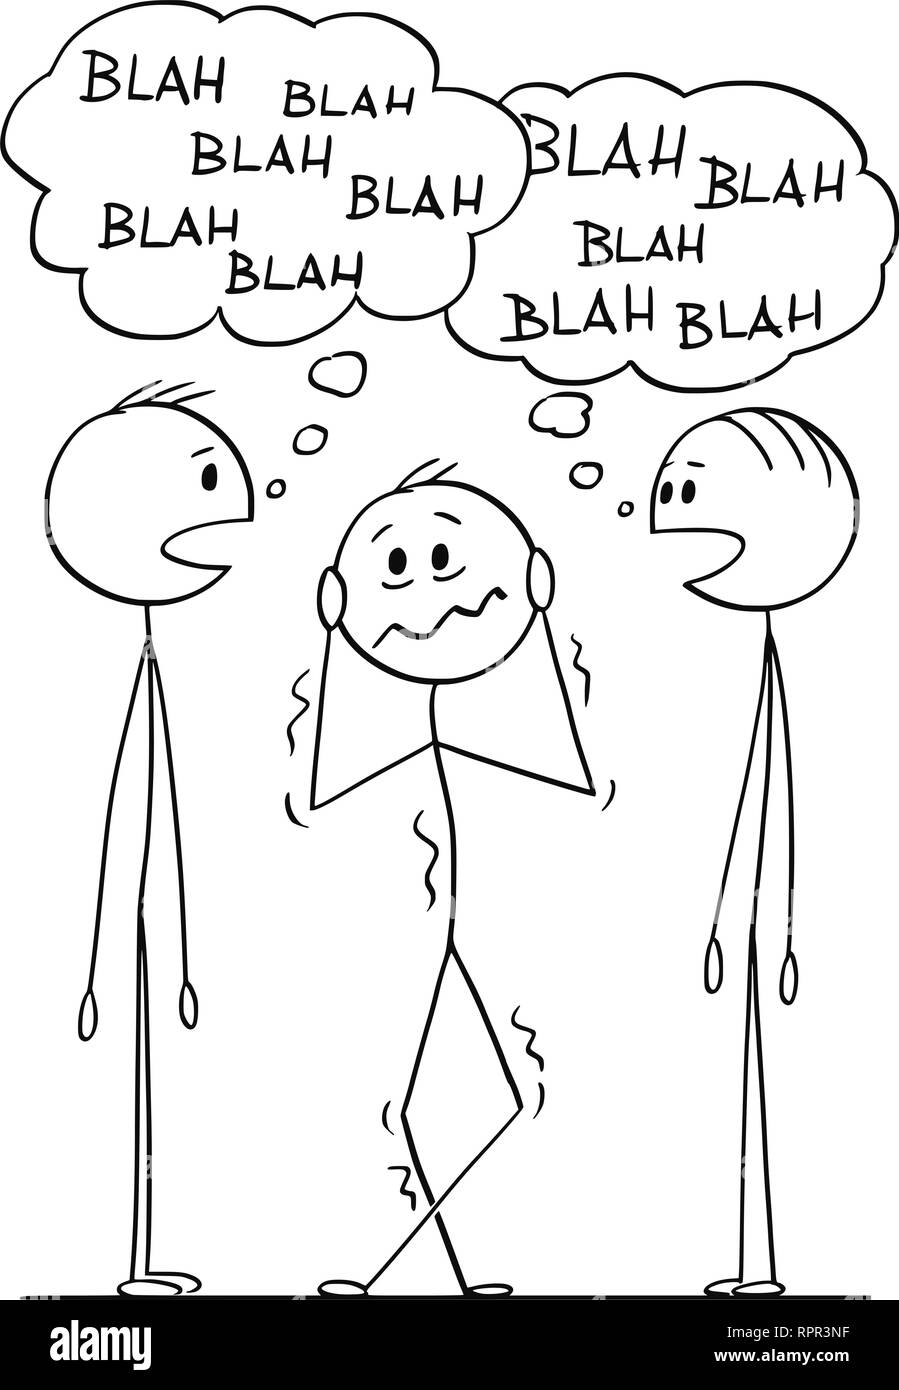 Cartoon von frustrierter Mann hören zwei Männer Gespräch mit Blah-Blah Sprechblasen Stock Vektor